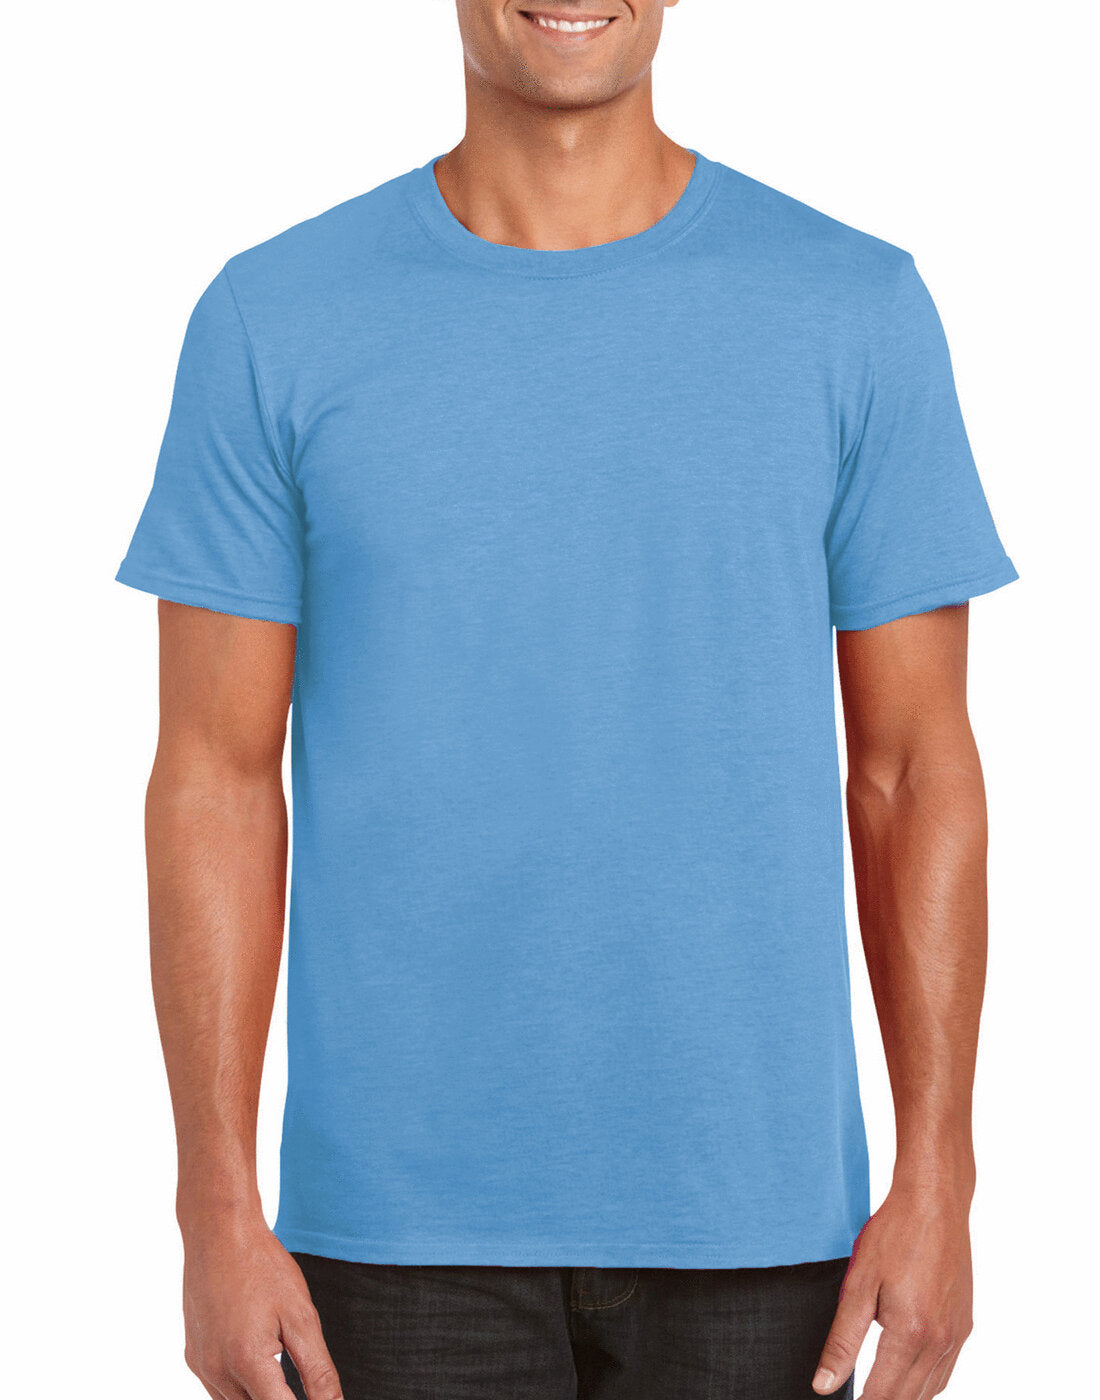 Gildan Adult Softstyle Ringspun T-Shirt - GD01 - Carolina Blue